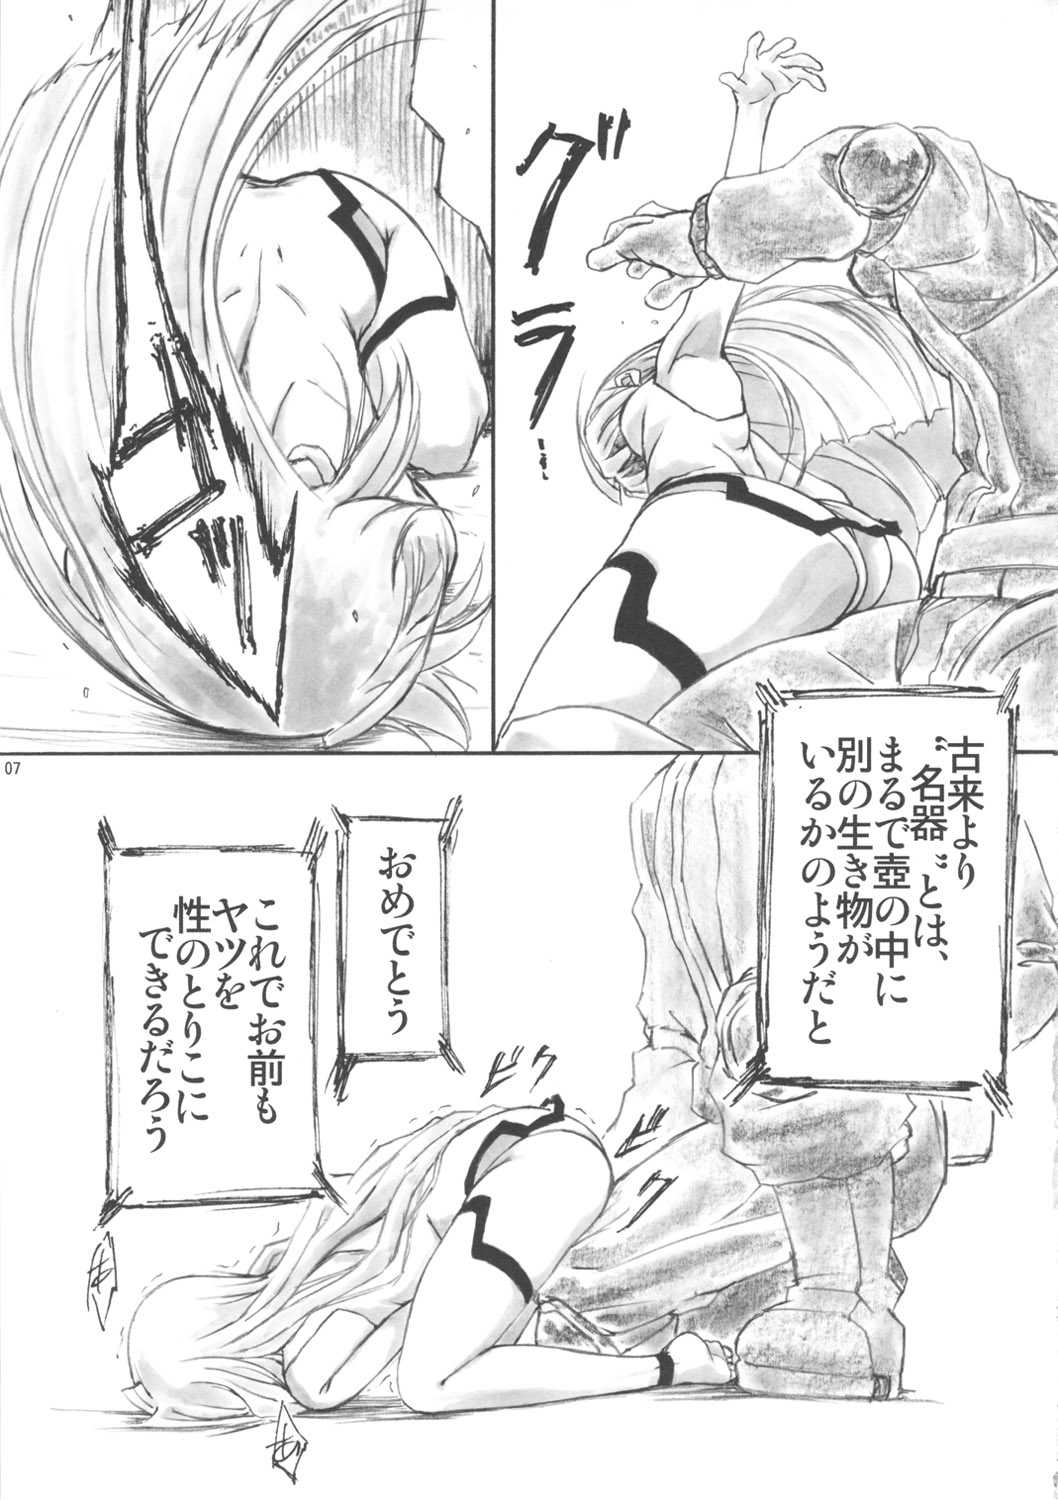 [AXZ (Shinobu Akira)] Infinite Laura! (Infinite Stratos) [AXZ (篠部秋良)] 淫フィニット・ラ○ラ! (インフィニット・ストラトス)